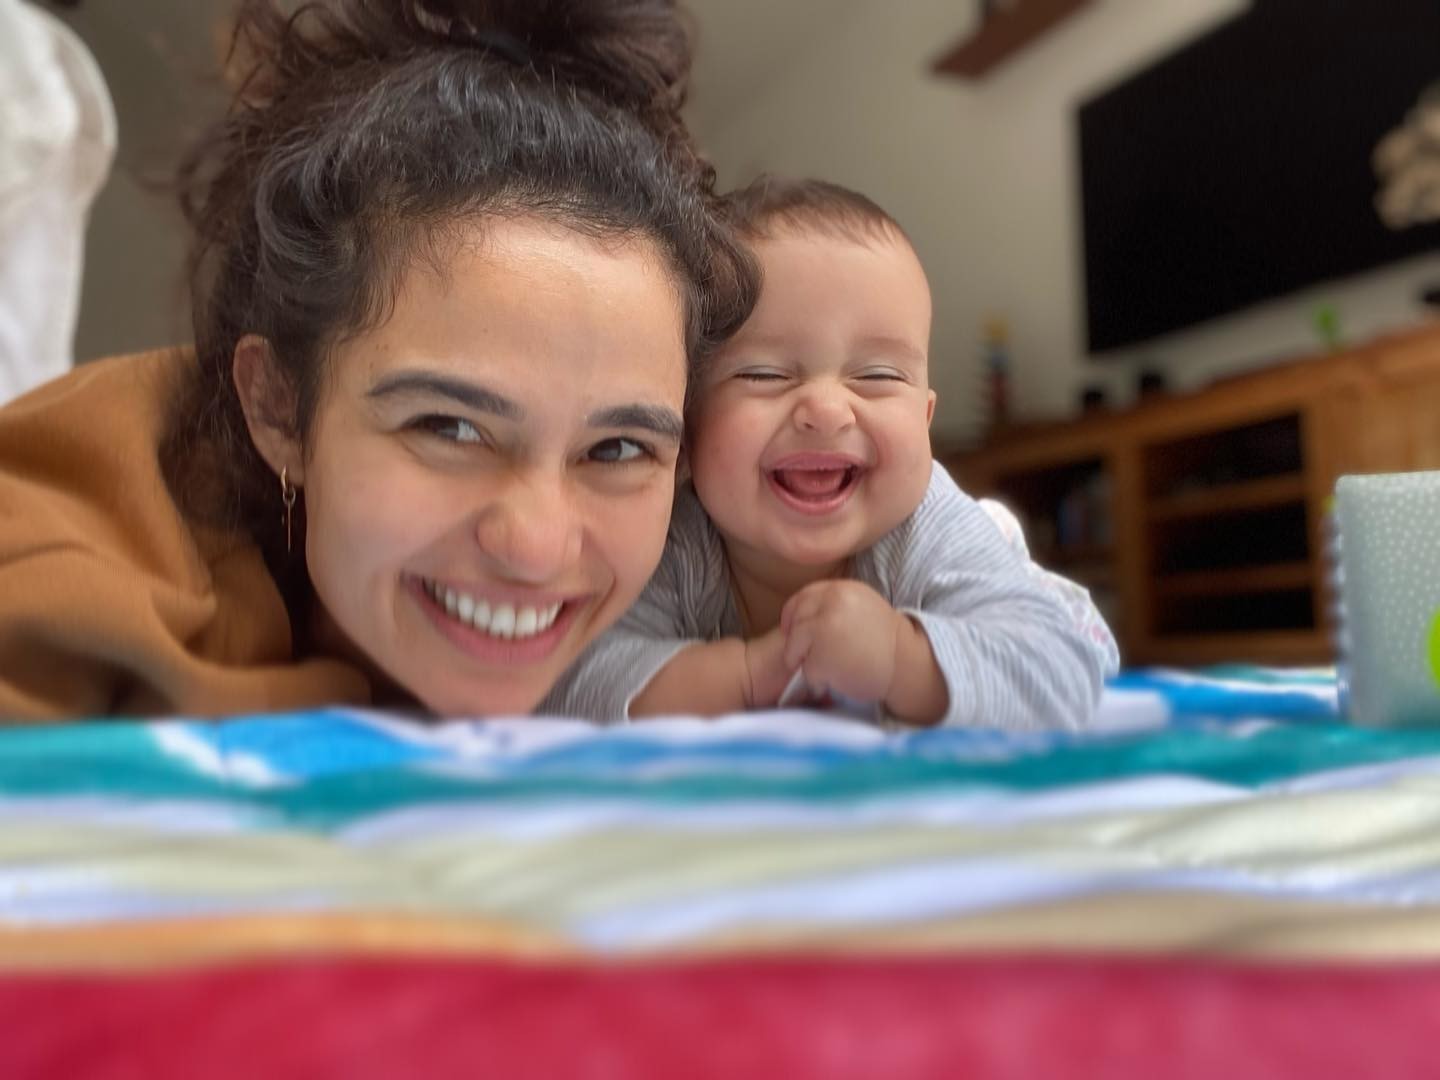 Nanda Costa encanta ao mostrar sorriso da filha: 'Eu e minha caçulinha' (Foto: Reprodução / Instagram)